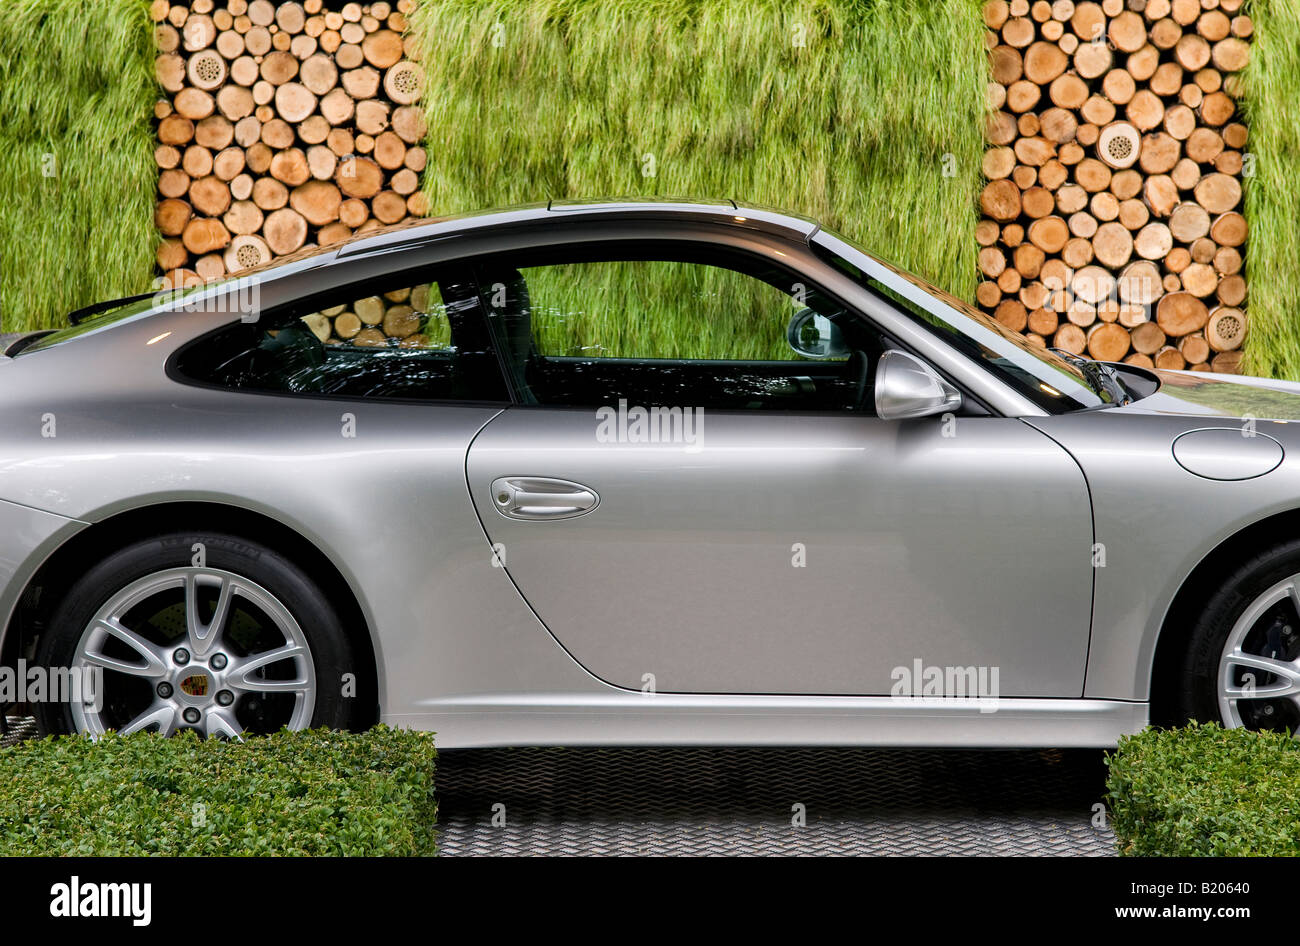 Porsche 911 motor Sportwagen im Garten Auffahrt Stockfoto